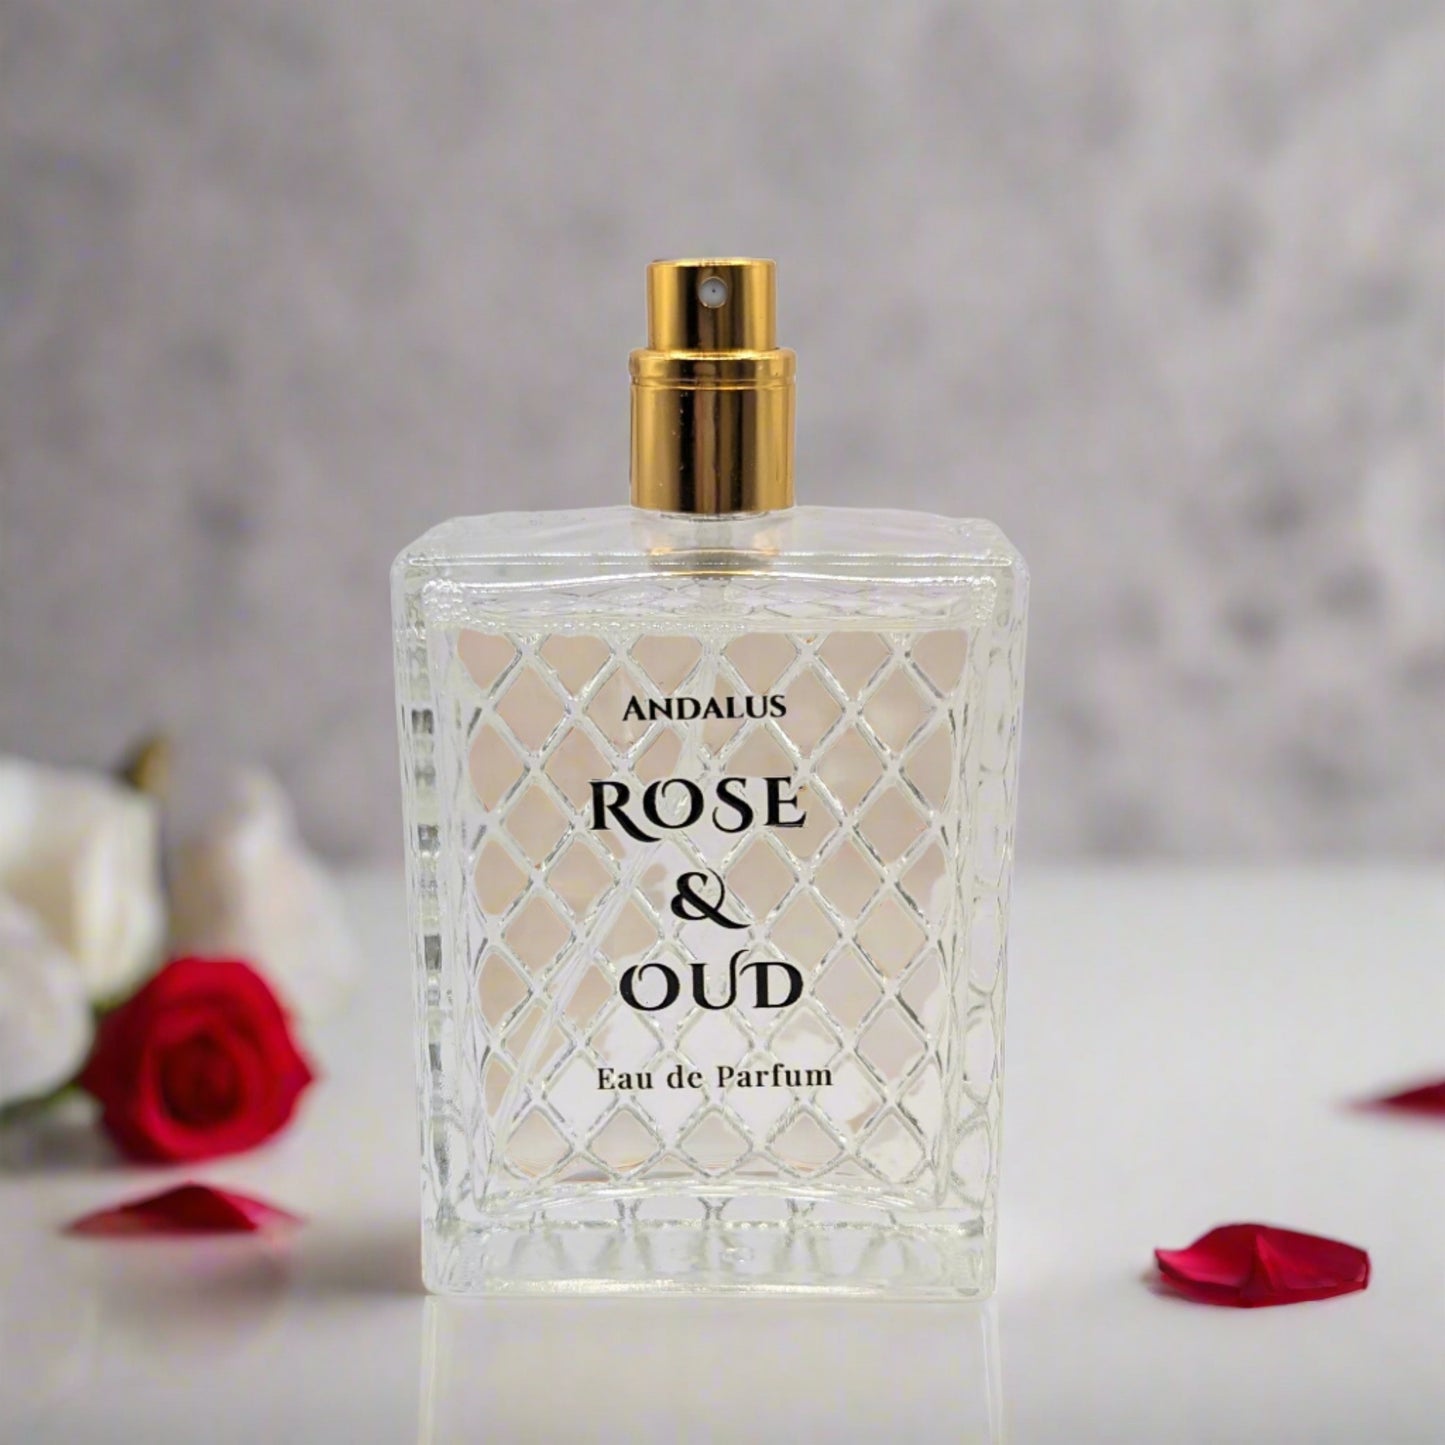 Rose & Oud 100mL perfume bottle